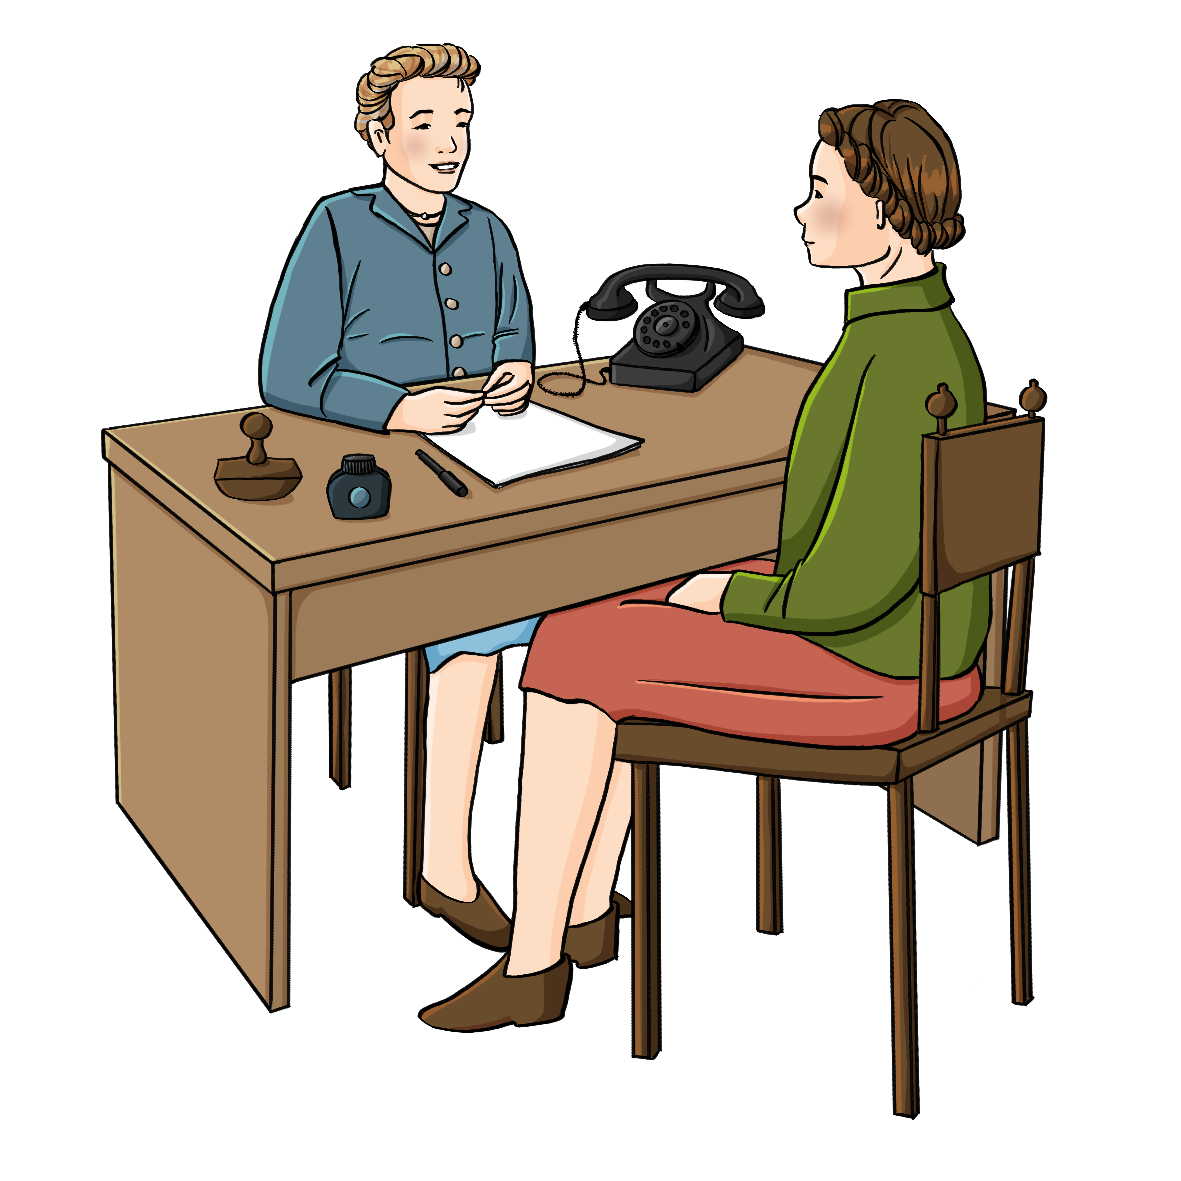 Zwei Frauen in Kleidung der 40er Jahre sitzen an einem Schreibtisch gegenüber. Auf dem Schreibtisch sind Papiere und Tintenfass und ein altmodisches Telefon.